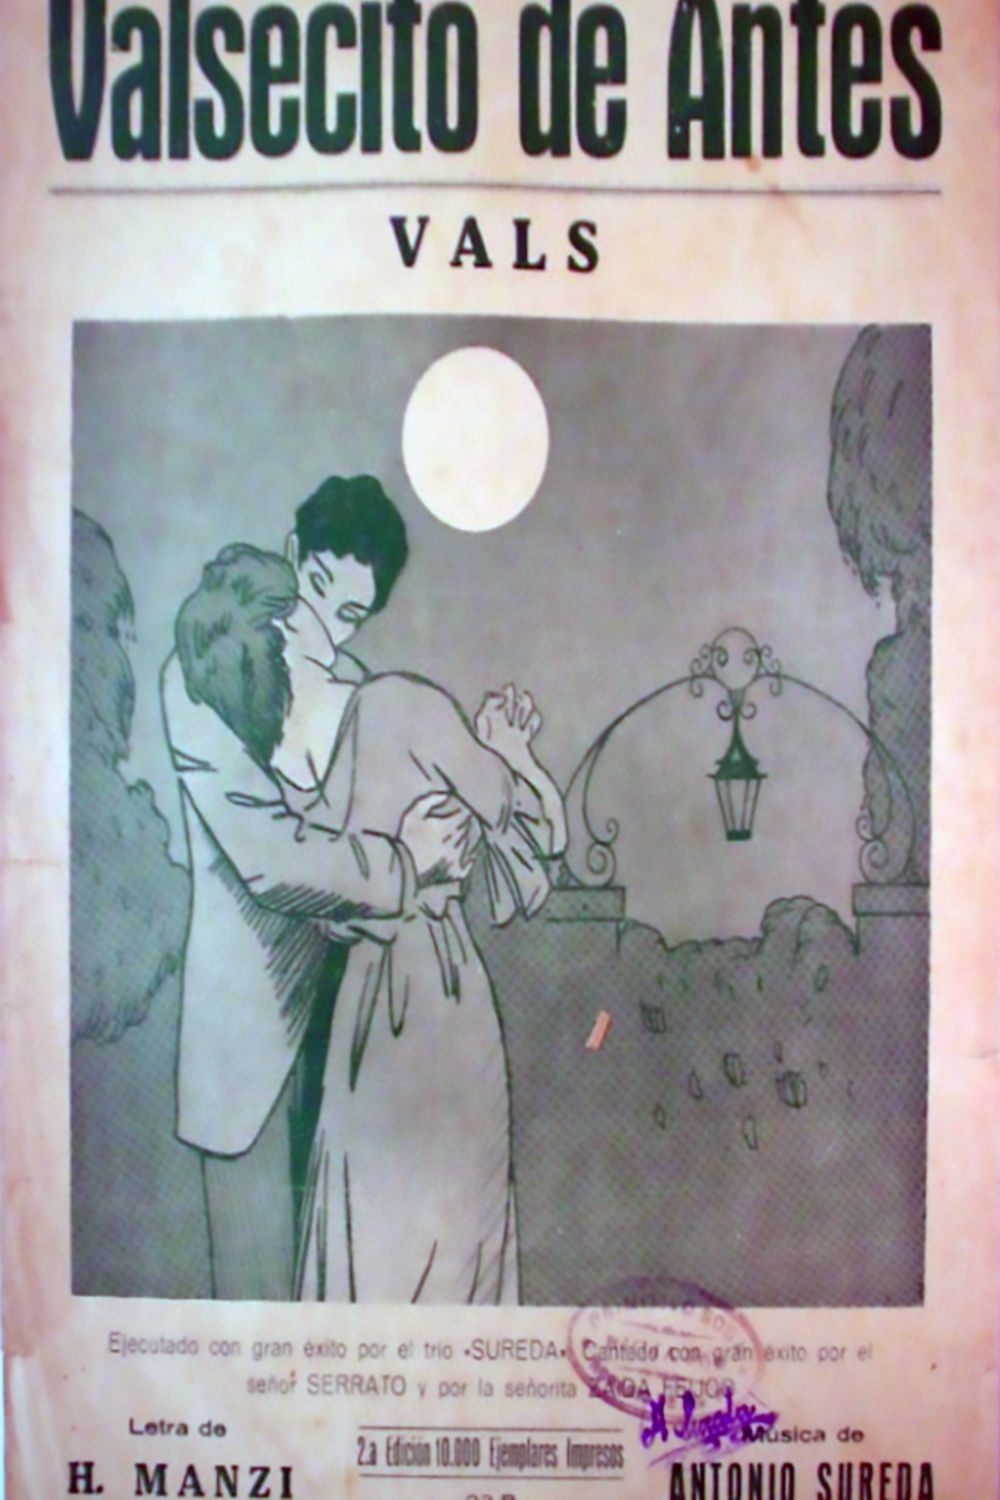 'Valsecito de antes', Argentine Tango music sheet cover.